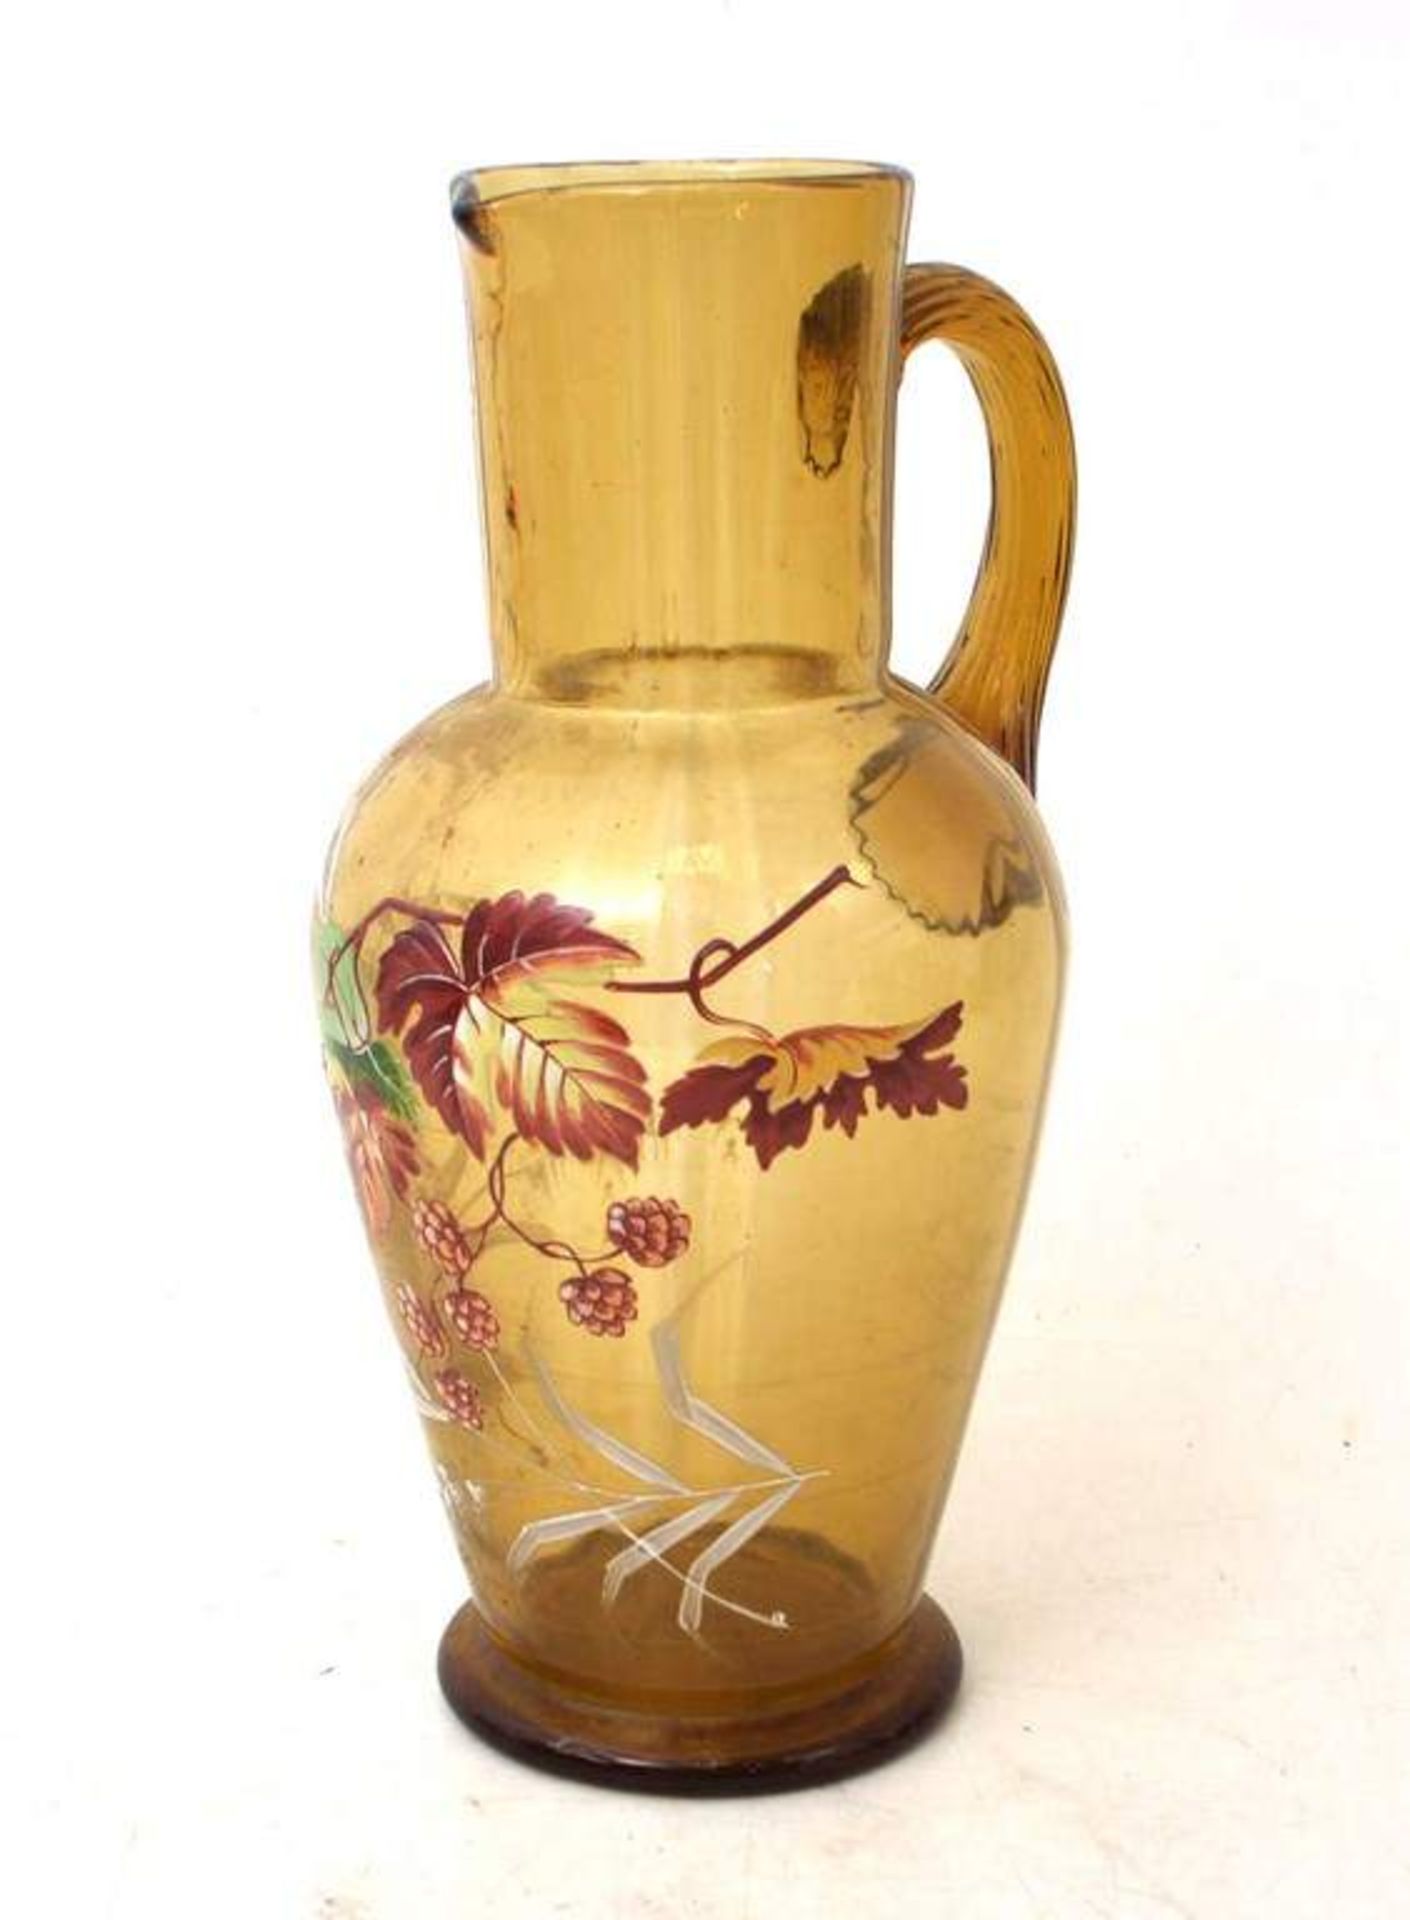 Krug bernsteinfarbenes Glas, leicht gebaucht, Wandung mit Emailmalerei, ein Griff, H 30 cm, um 1880